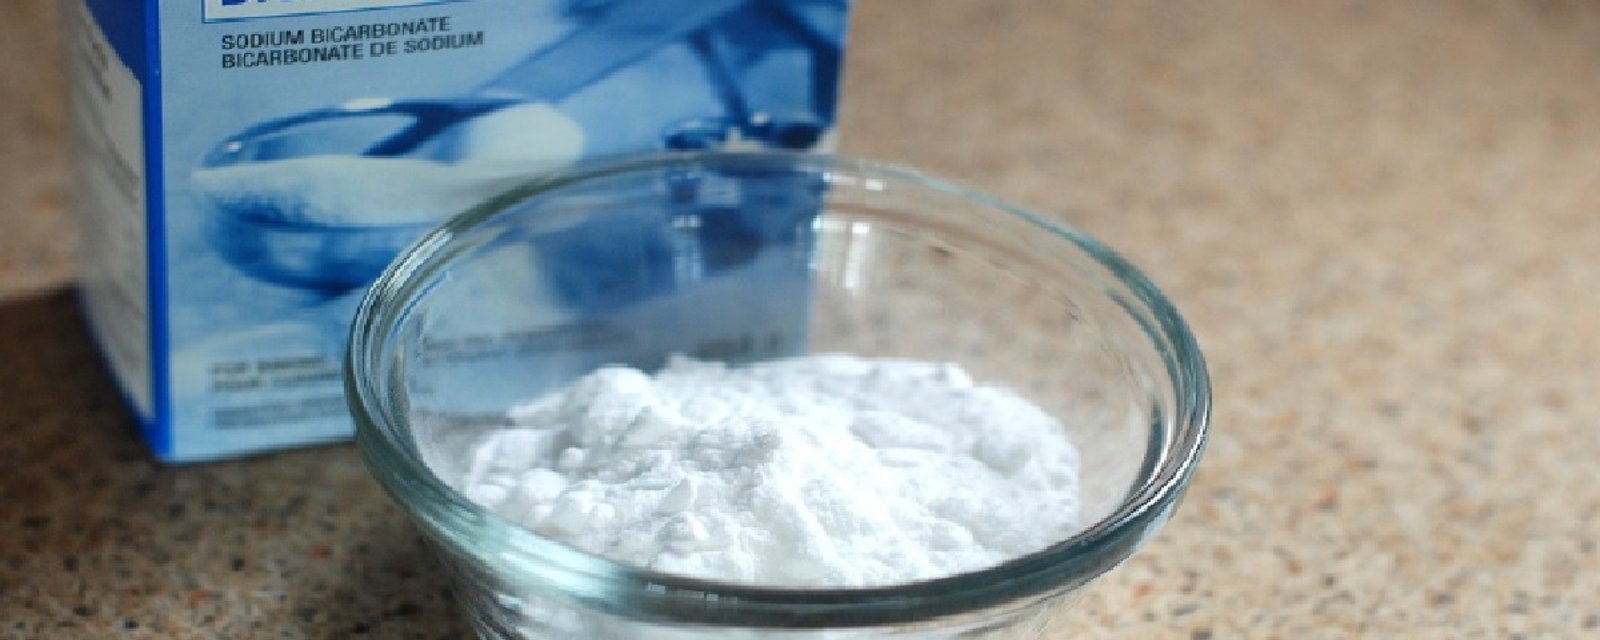 Rien ne surclasse le bicarbonate de soude pour les tâches ménagères! 6 recettes de nettoyants maison dont vous ne pourrez plus vous passer